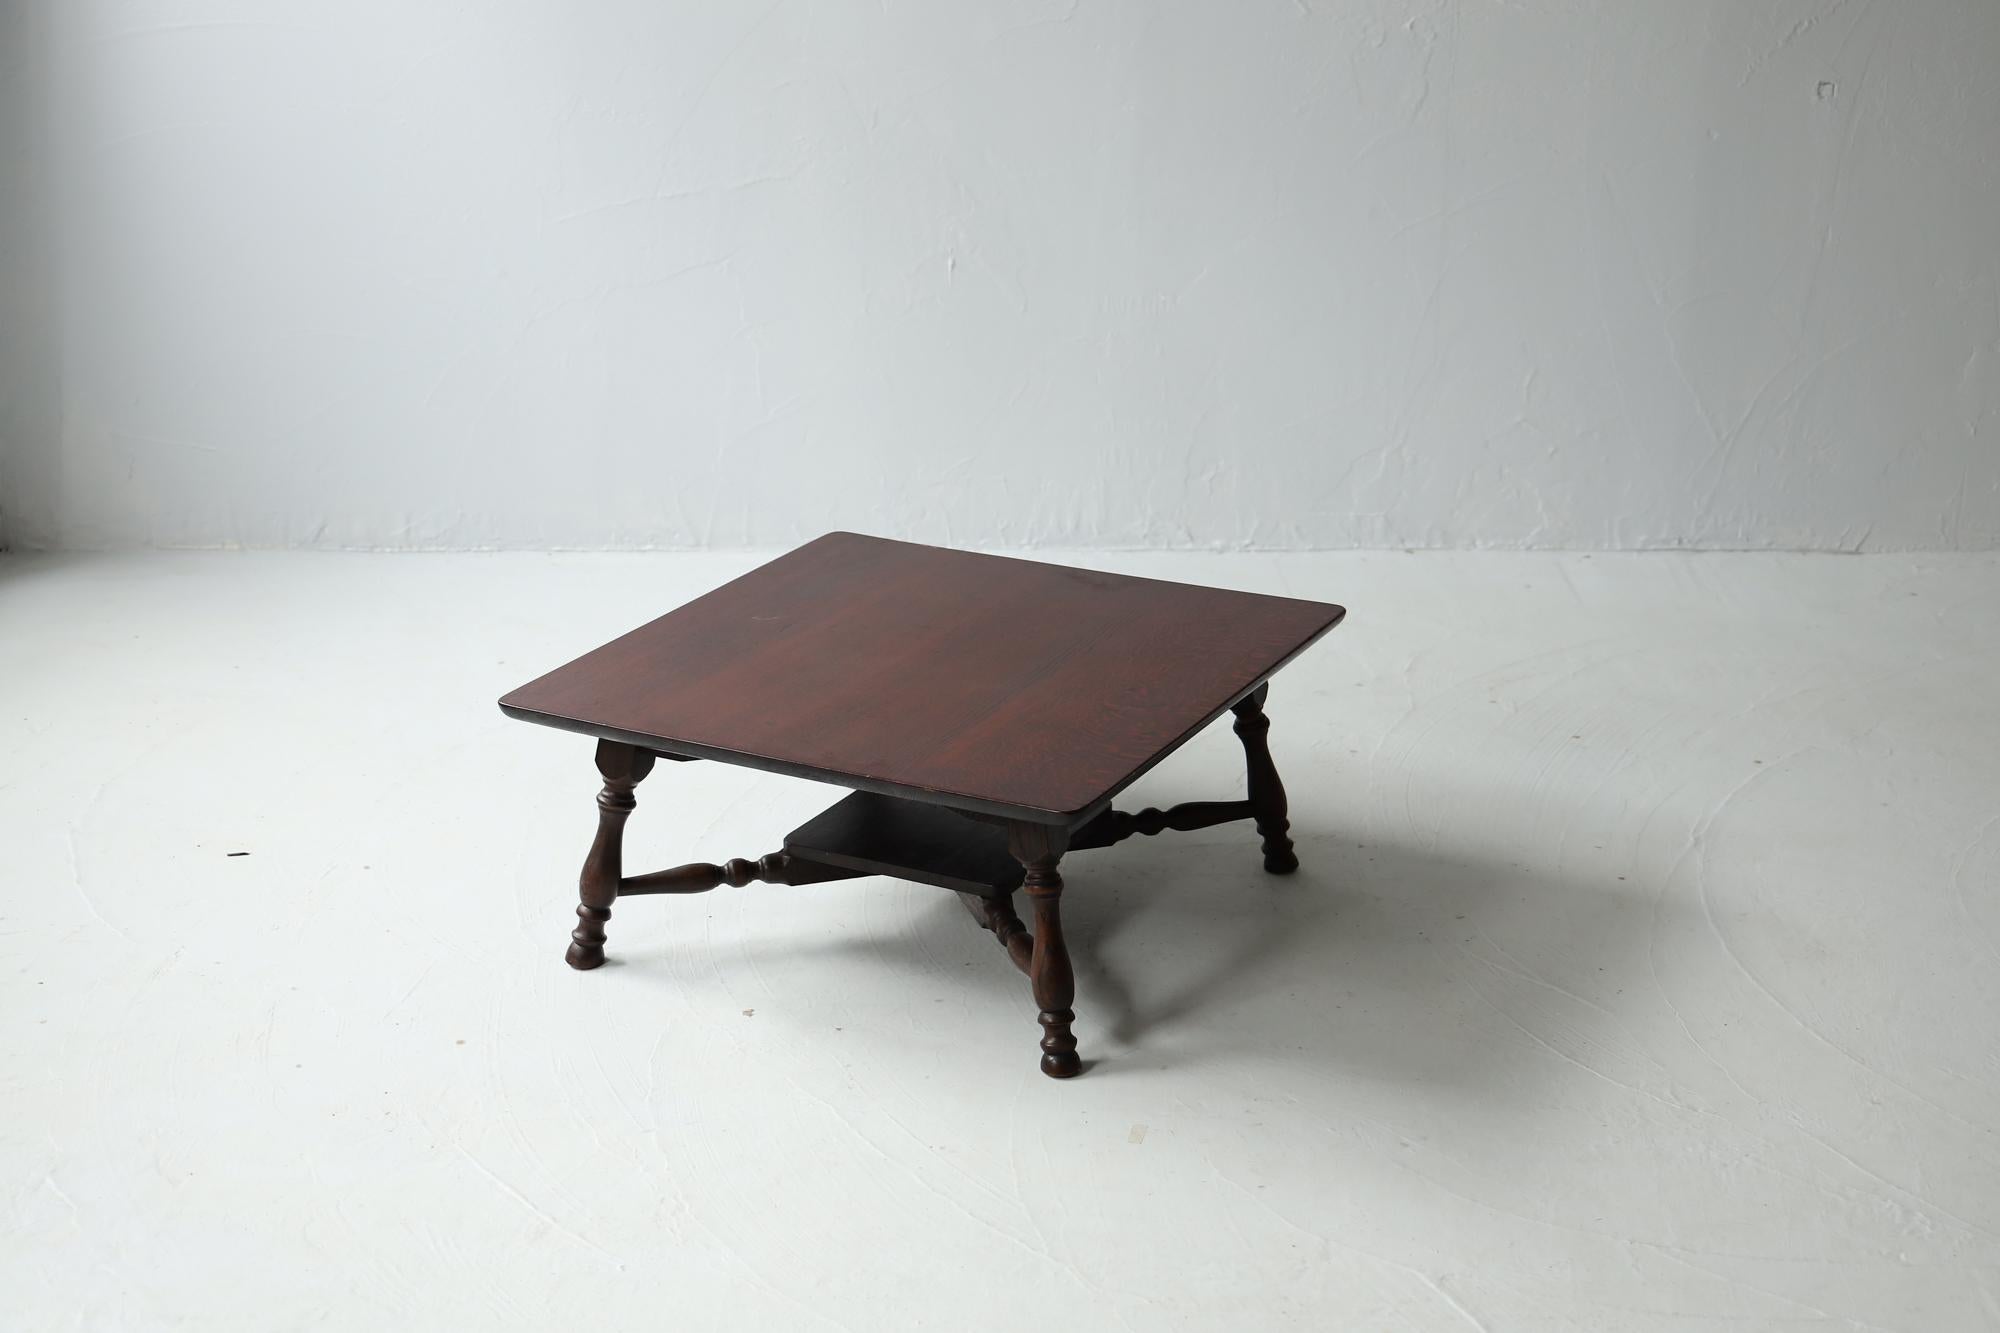 Il s'agit d'une table basse japonaise ancienne produite pendant la période Taisho.

Ce mobilier a été réalisé en appliquant les techniques traditionnelles utilisées dans les sanctuaires japonais.

Le matériau utilisé est le chêne de haute qualité.